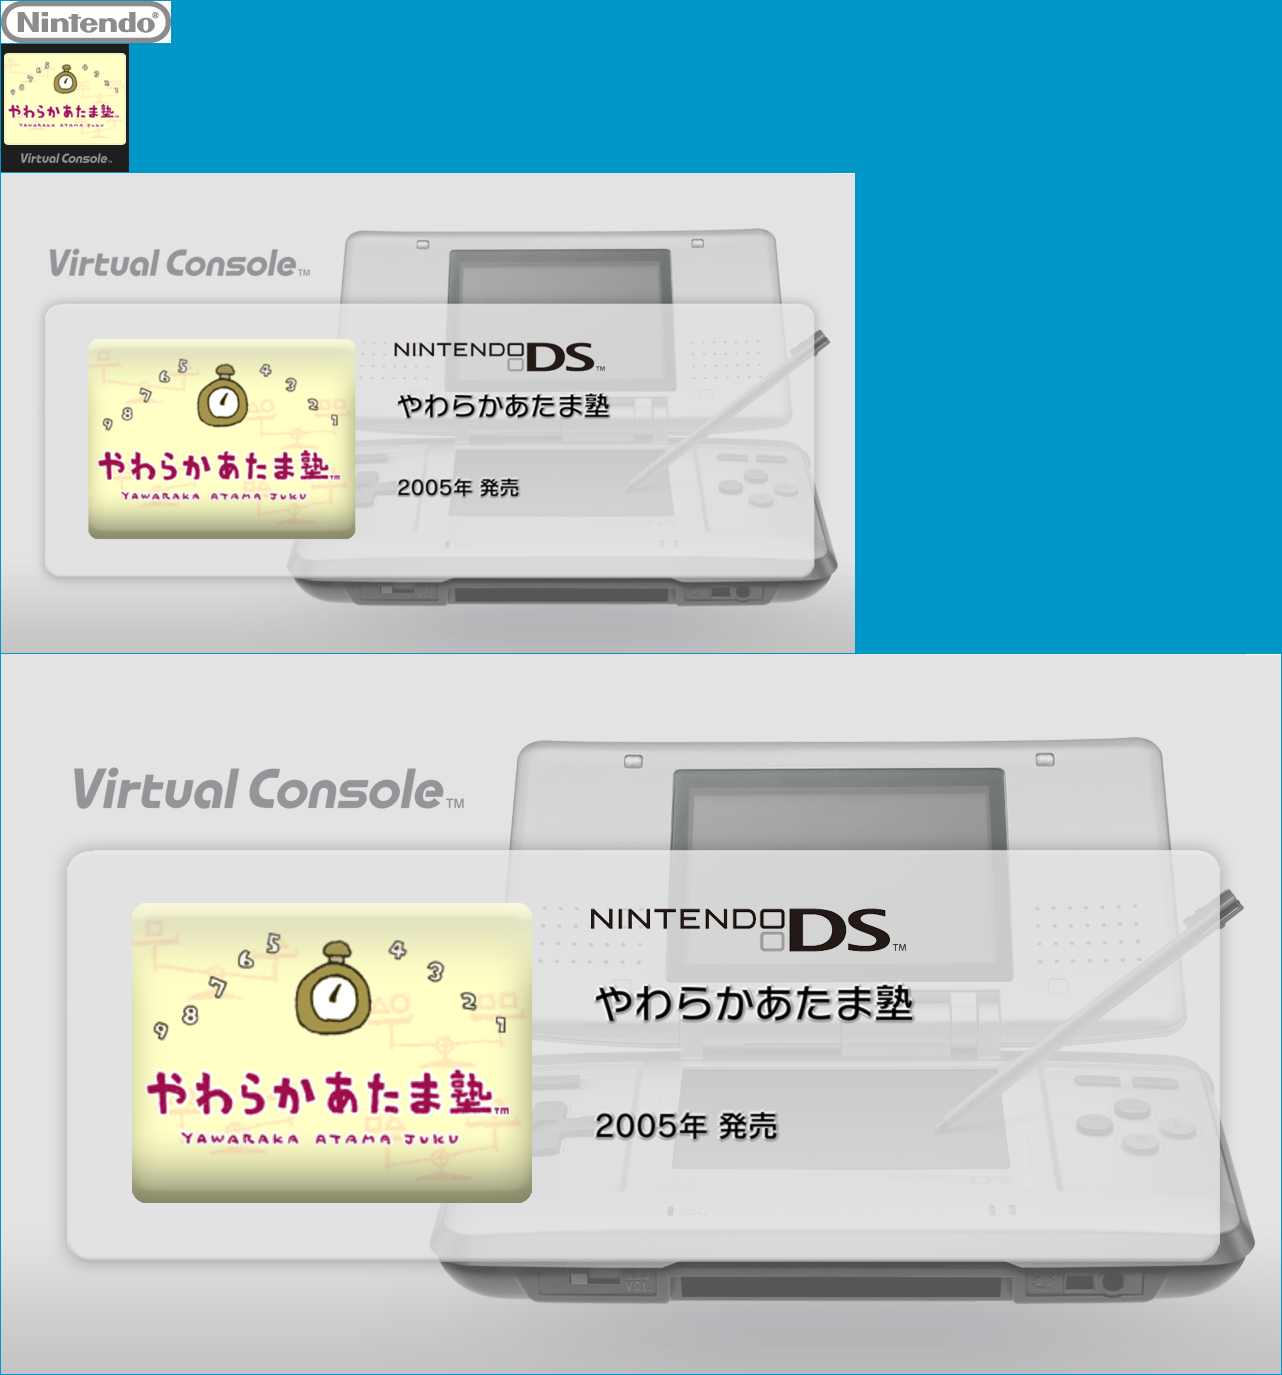 Virtual Console - Yawaraka Atama Juku